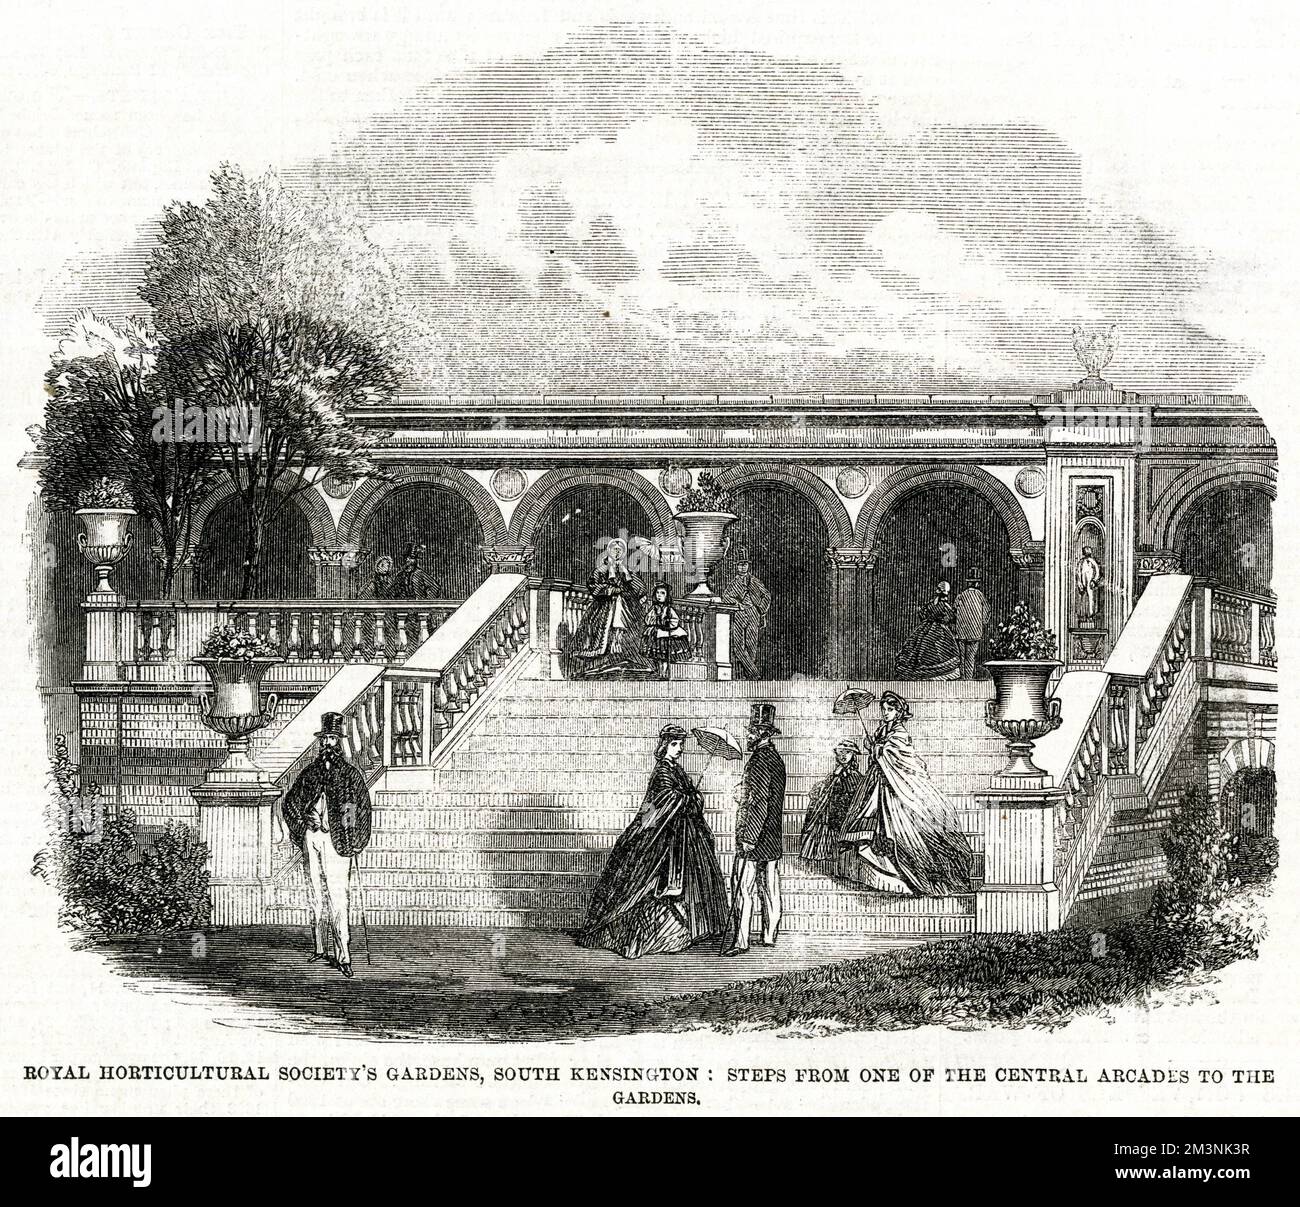 Giardini della Royal Horticultural Society a South Kensington, Londra : a pochi passi da una delle gallerie centrali ai giardini. Data: 1861 Foto Stock